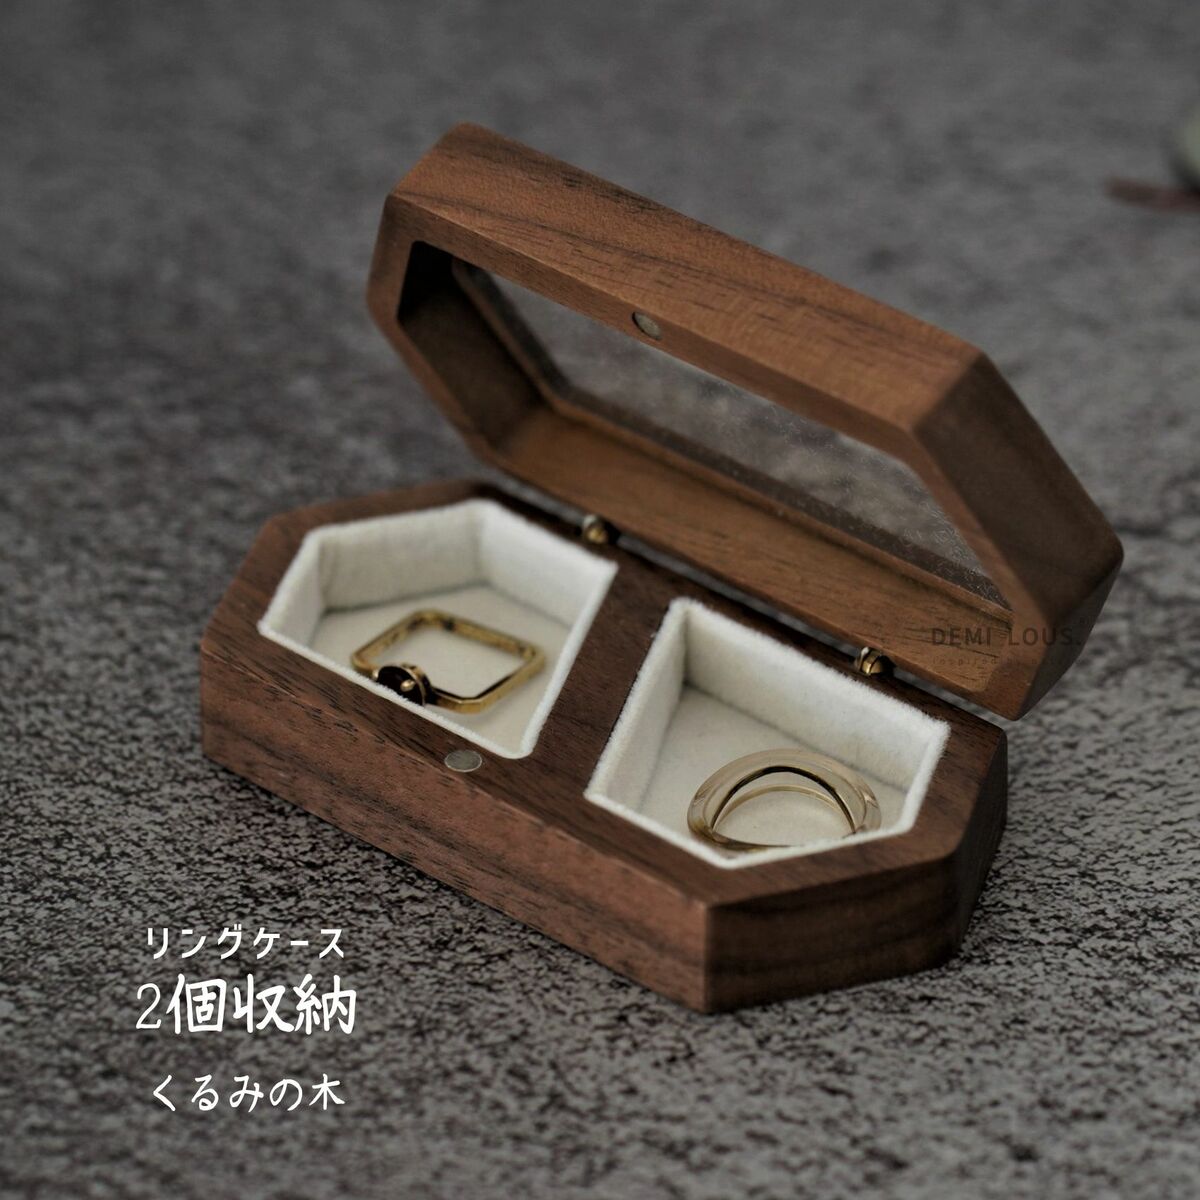 リングケース 木製 ペアリングケース ウォールナット 指輪ケース 婚約指輪二個のリング収納可能 持ち運べるサイズ リングボックス 高級素材 結婚お祝い プレセントとしても最適